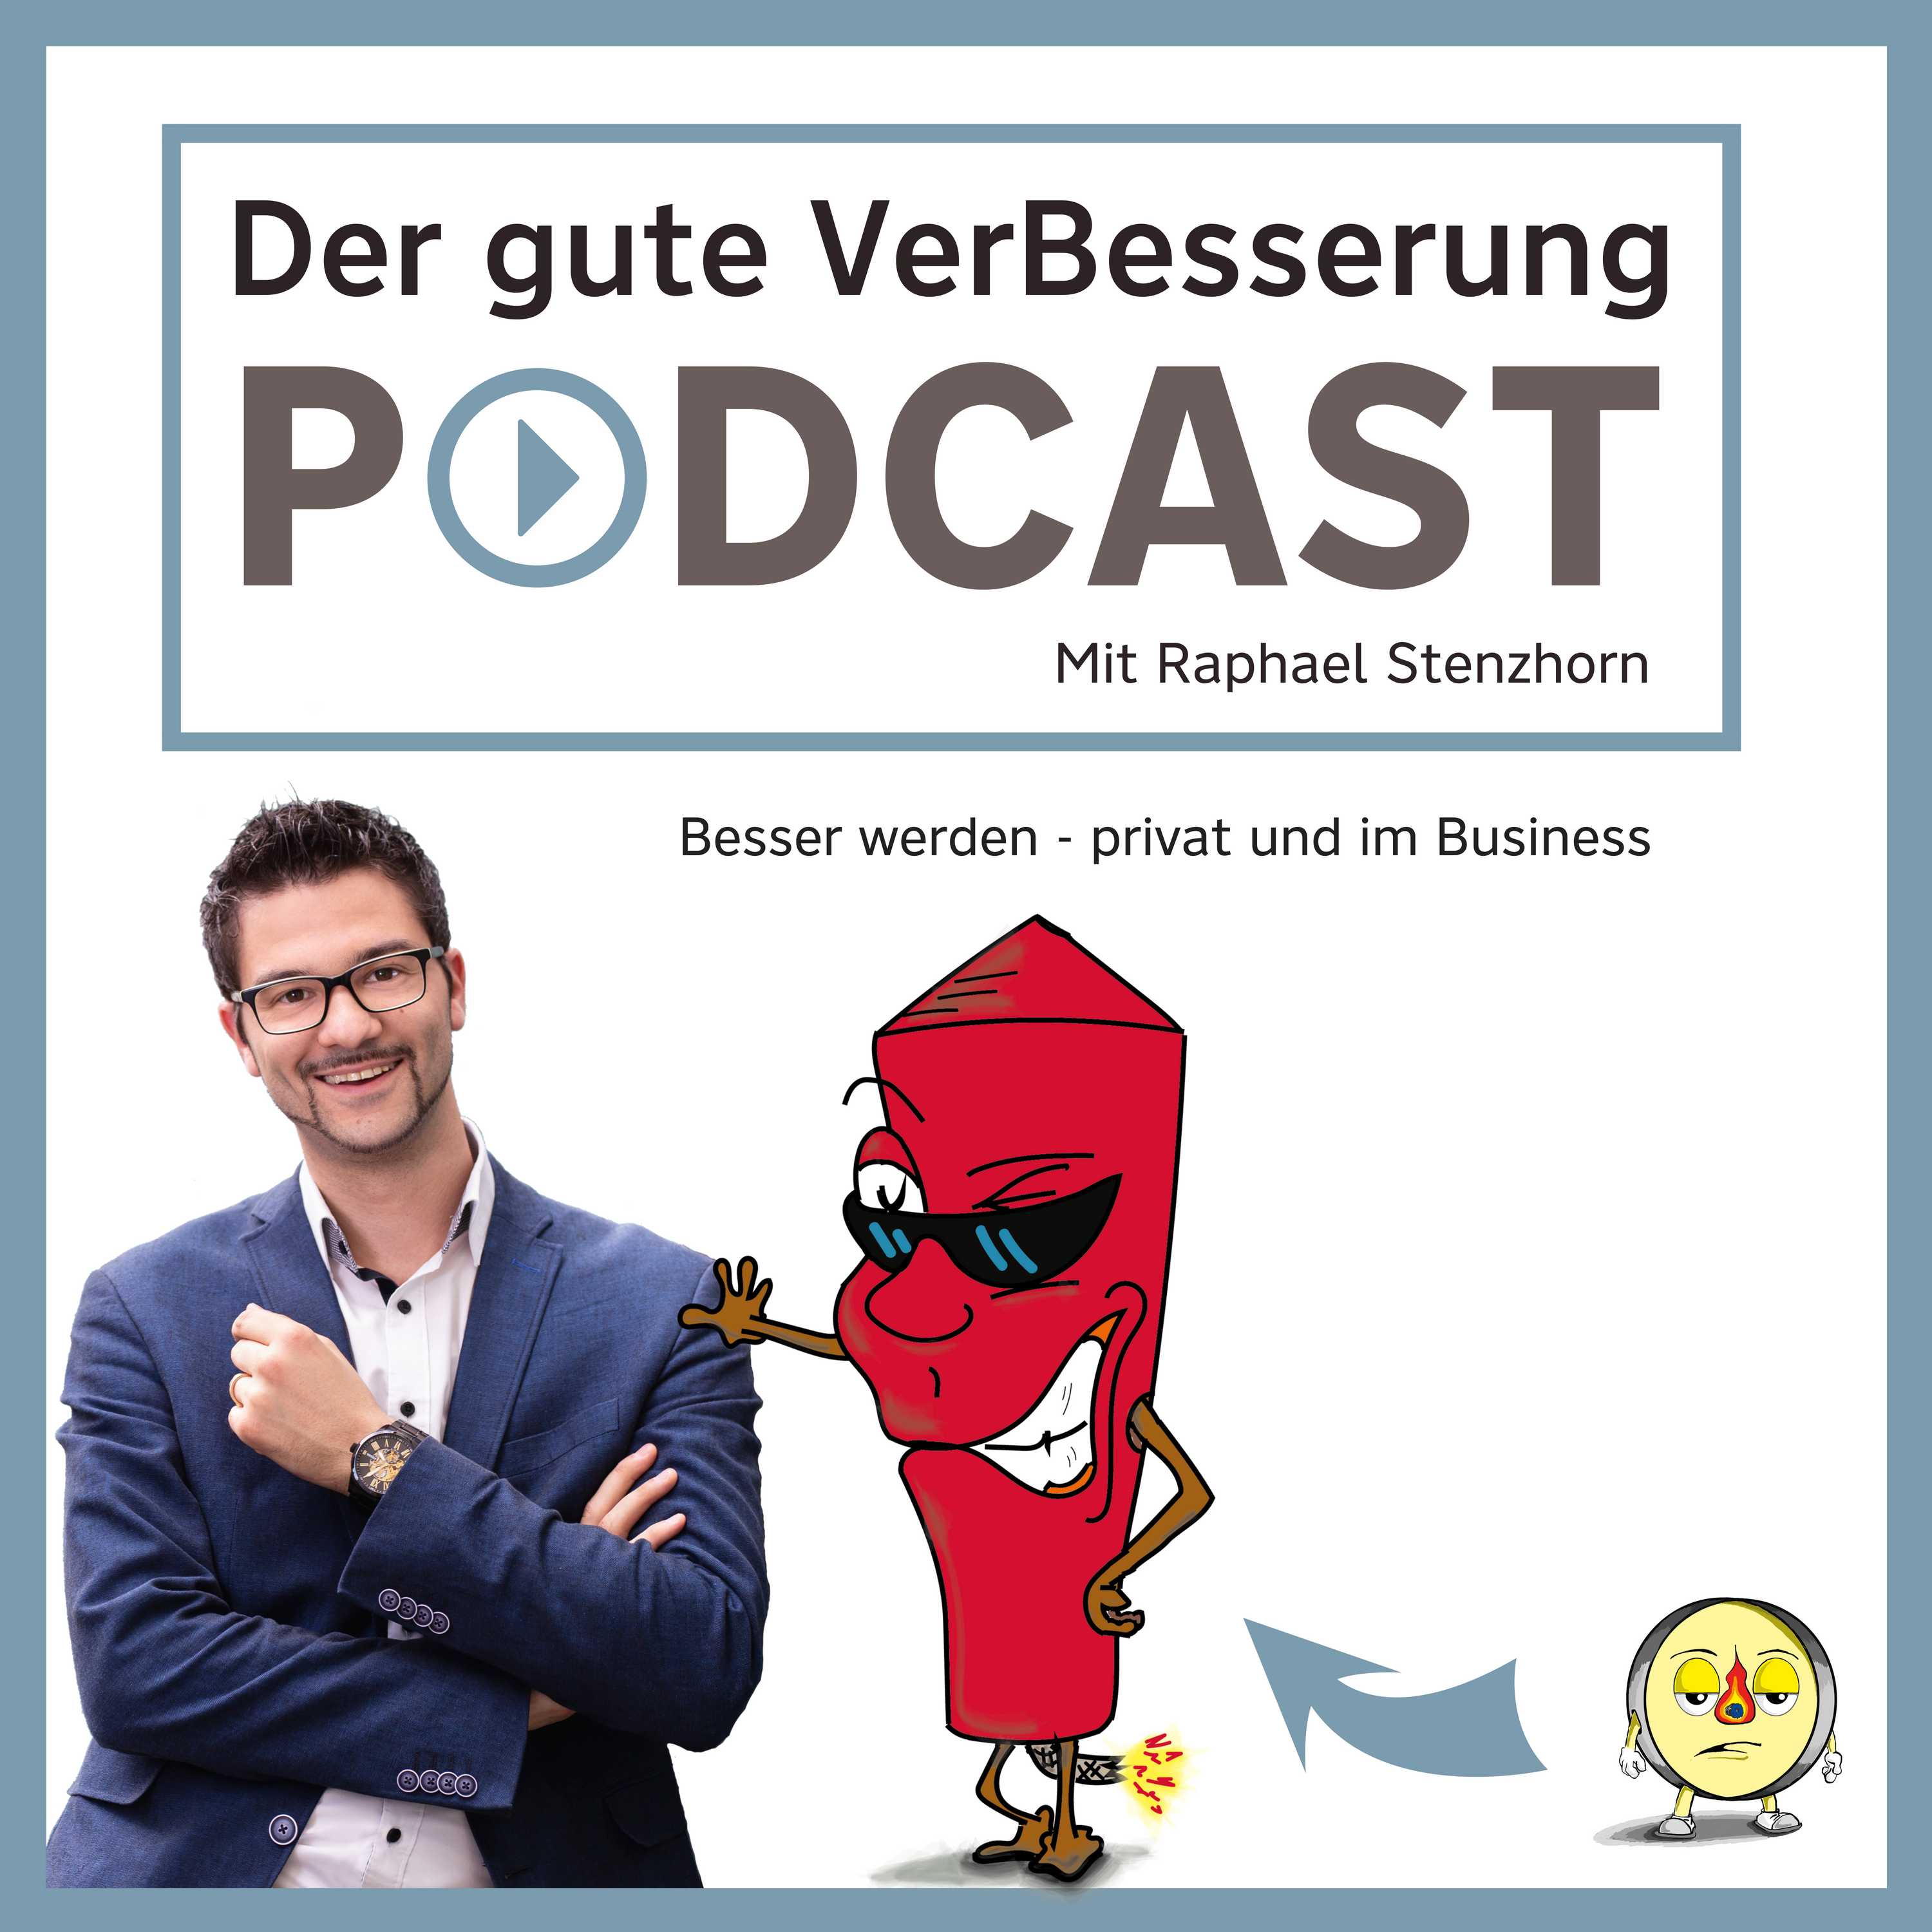 Der Gute-VerBesserung-Podcast